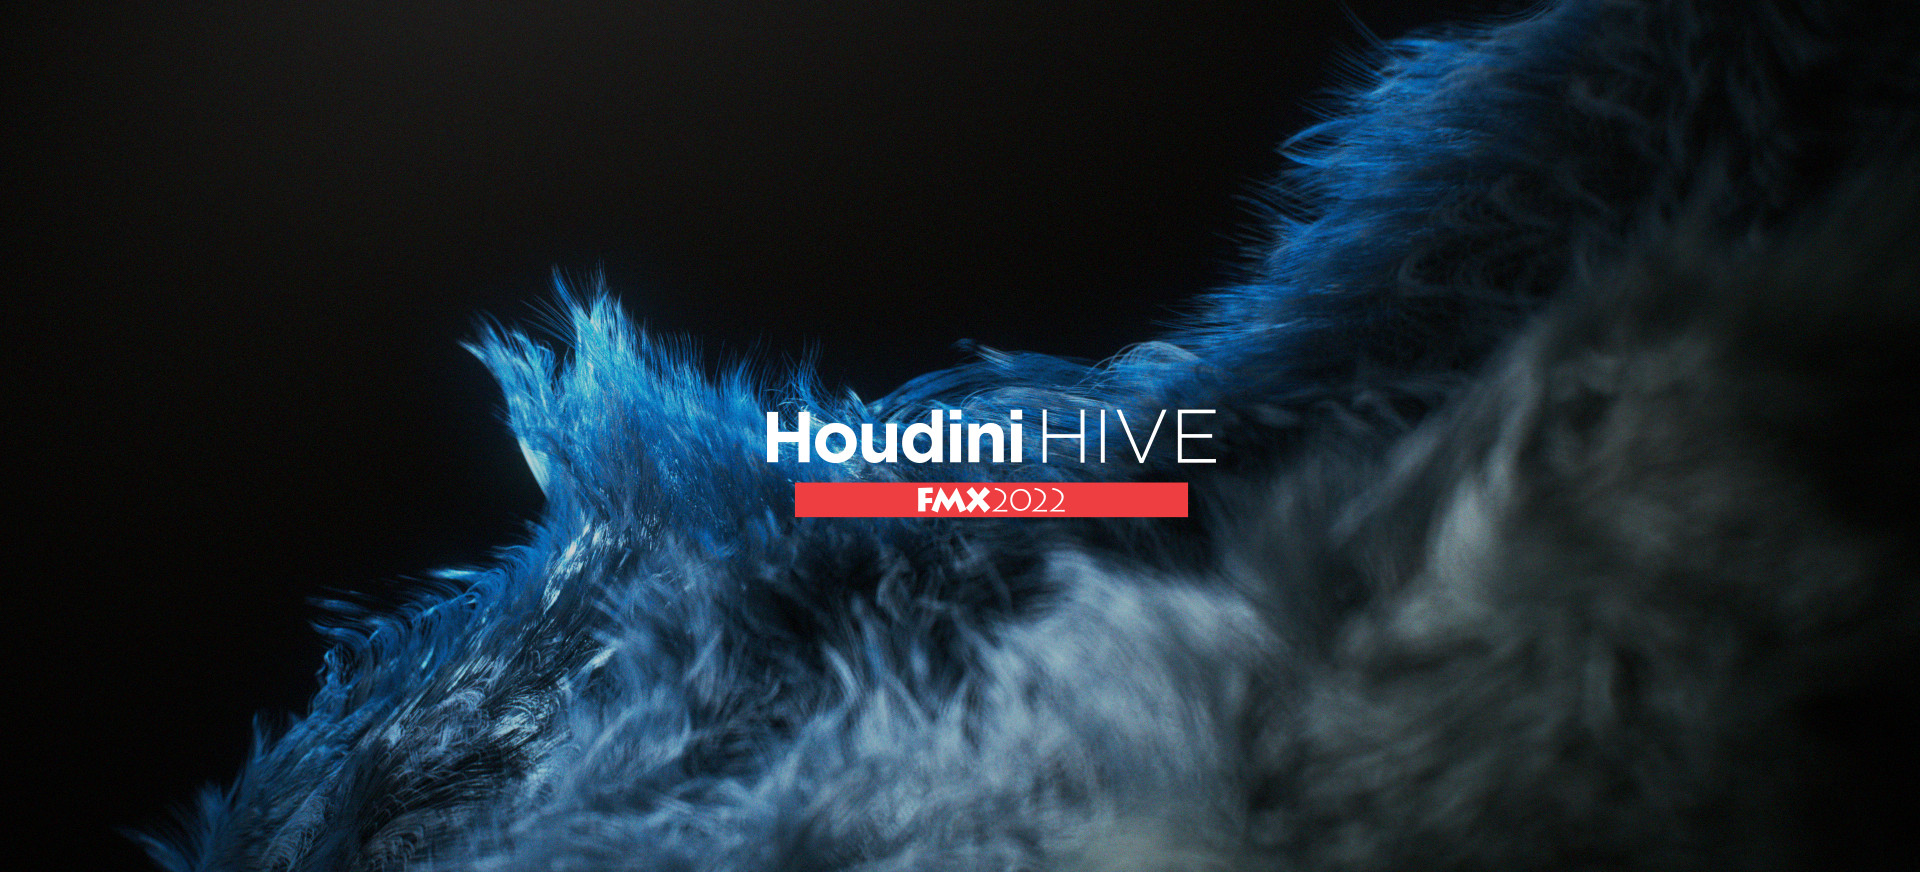 Houdini HIVE - FMX 2022